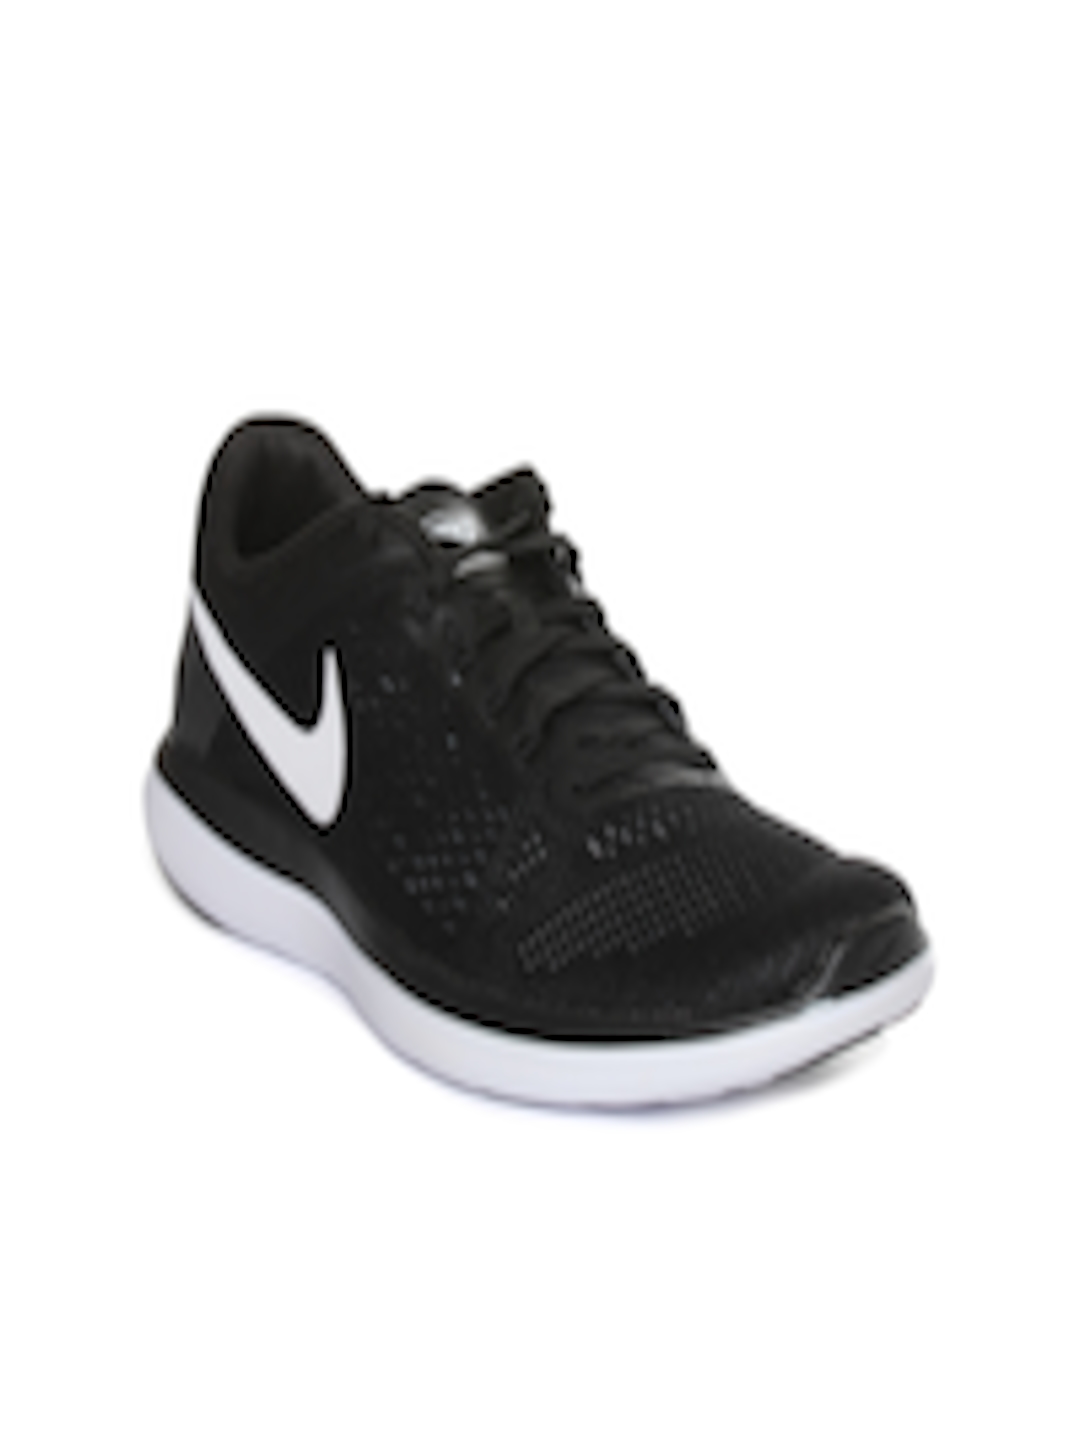 Buy Nike Women Black Flex 2016 Running Shoes - Sports Shoes for Women 1547900 | Myntra